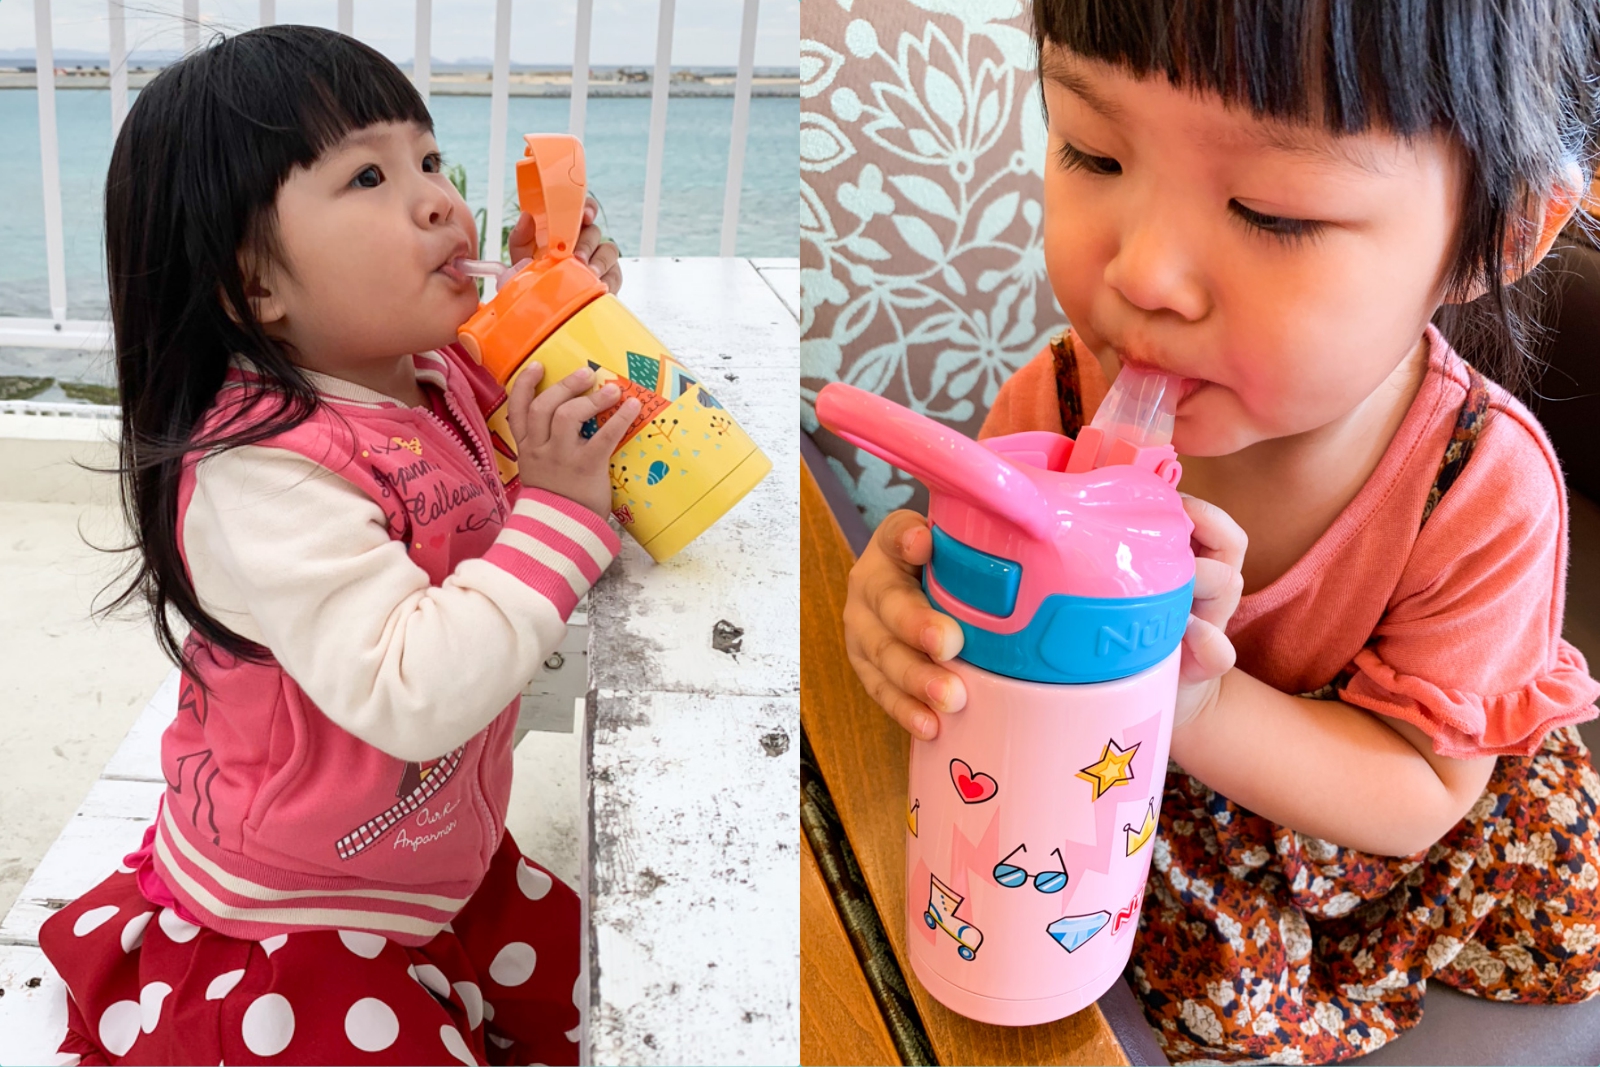 【育兒】 Nuby 專為寶寶設計 隨行杯 讓小孩當個愛喝水乖寶寶～ 保溫效果超好！外出攜帶超方便！